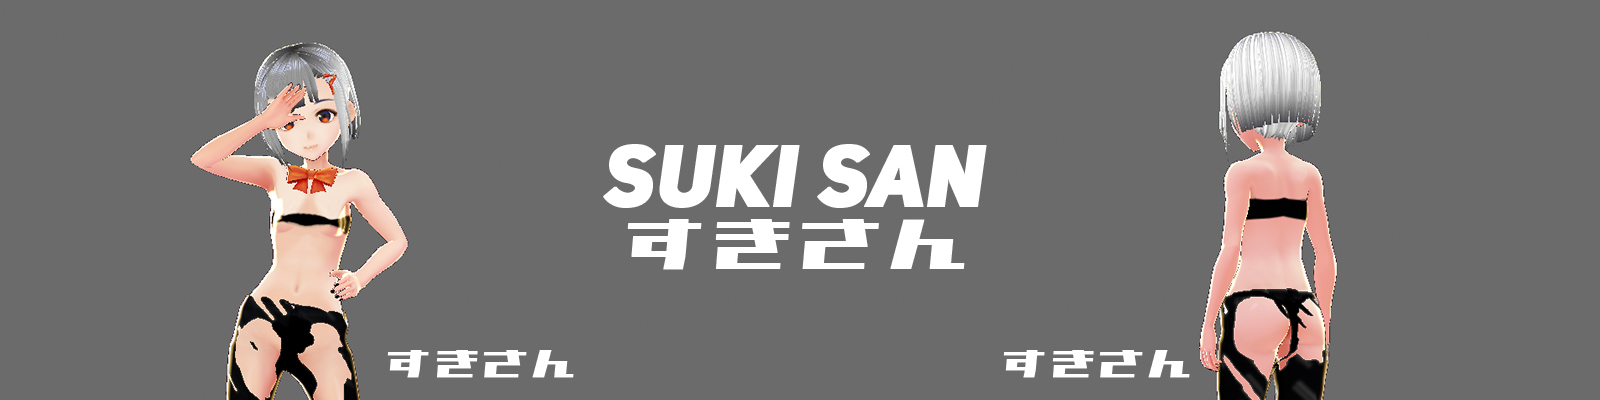 suki_san_banner.jpg